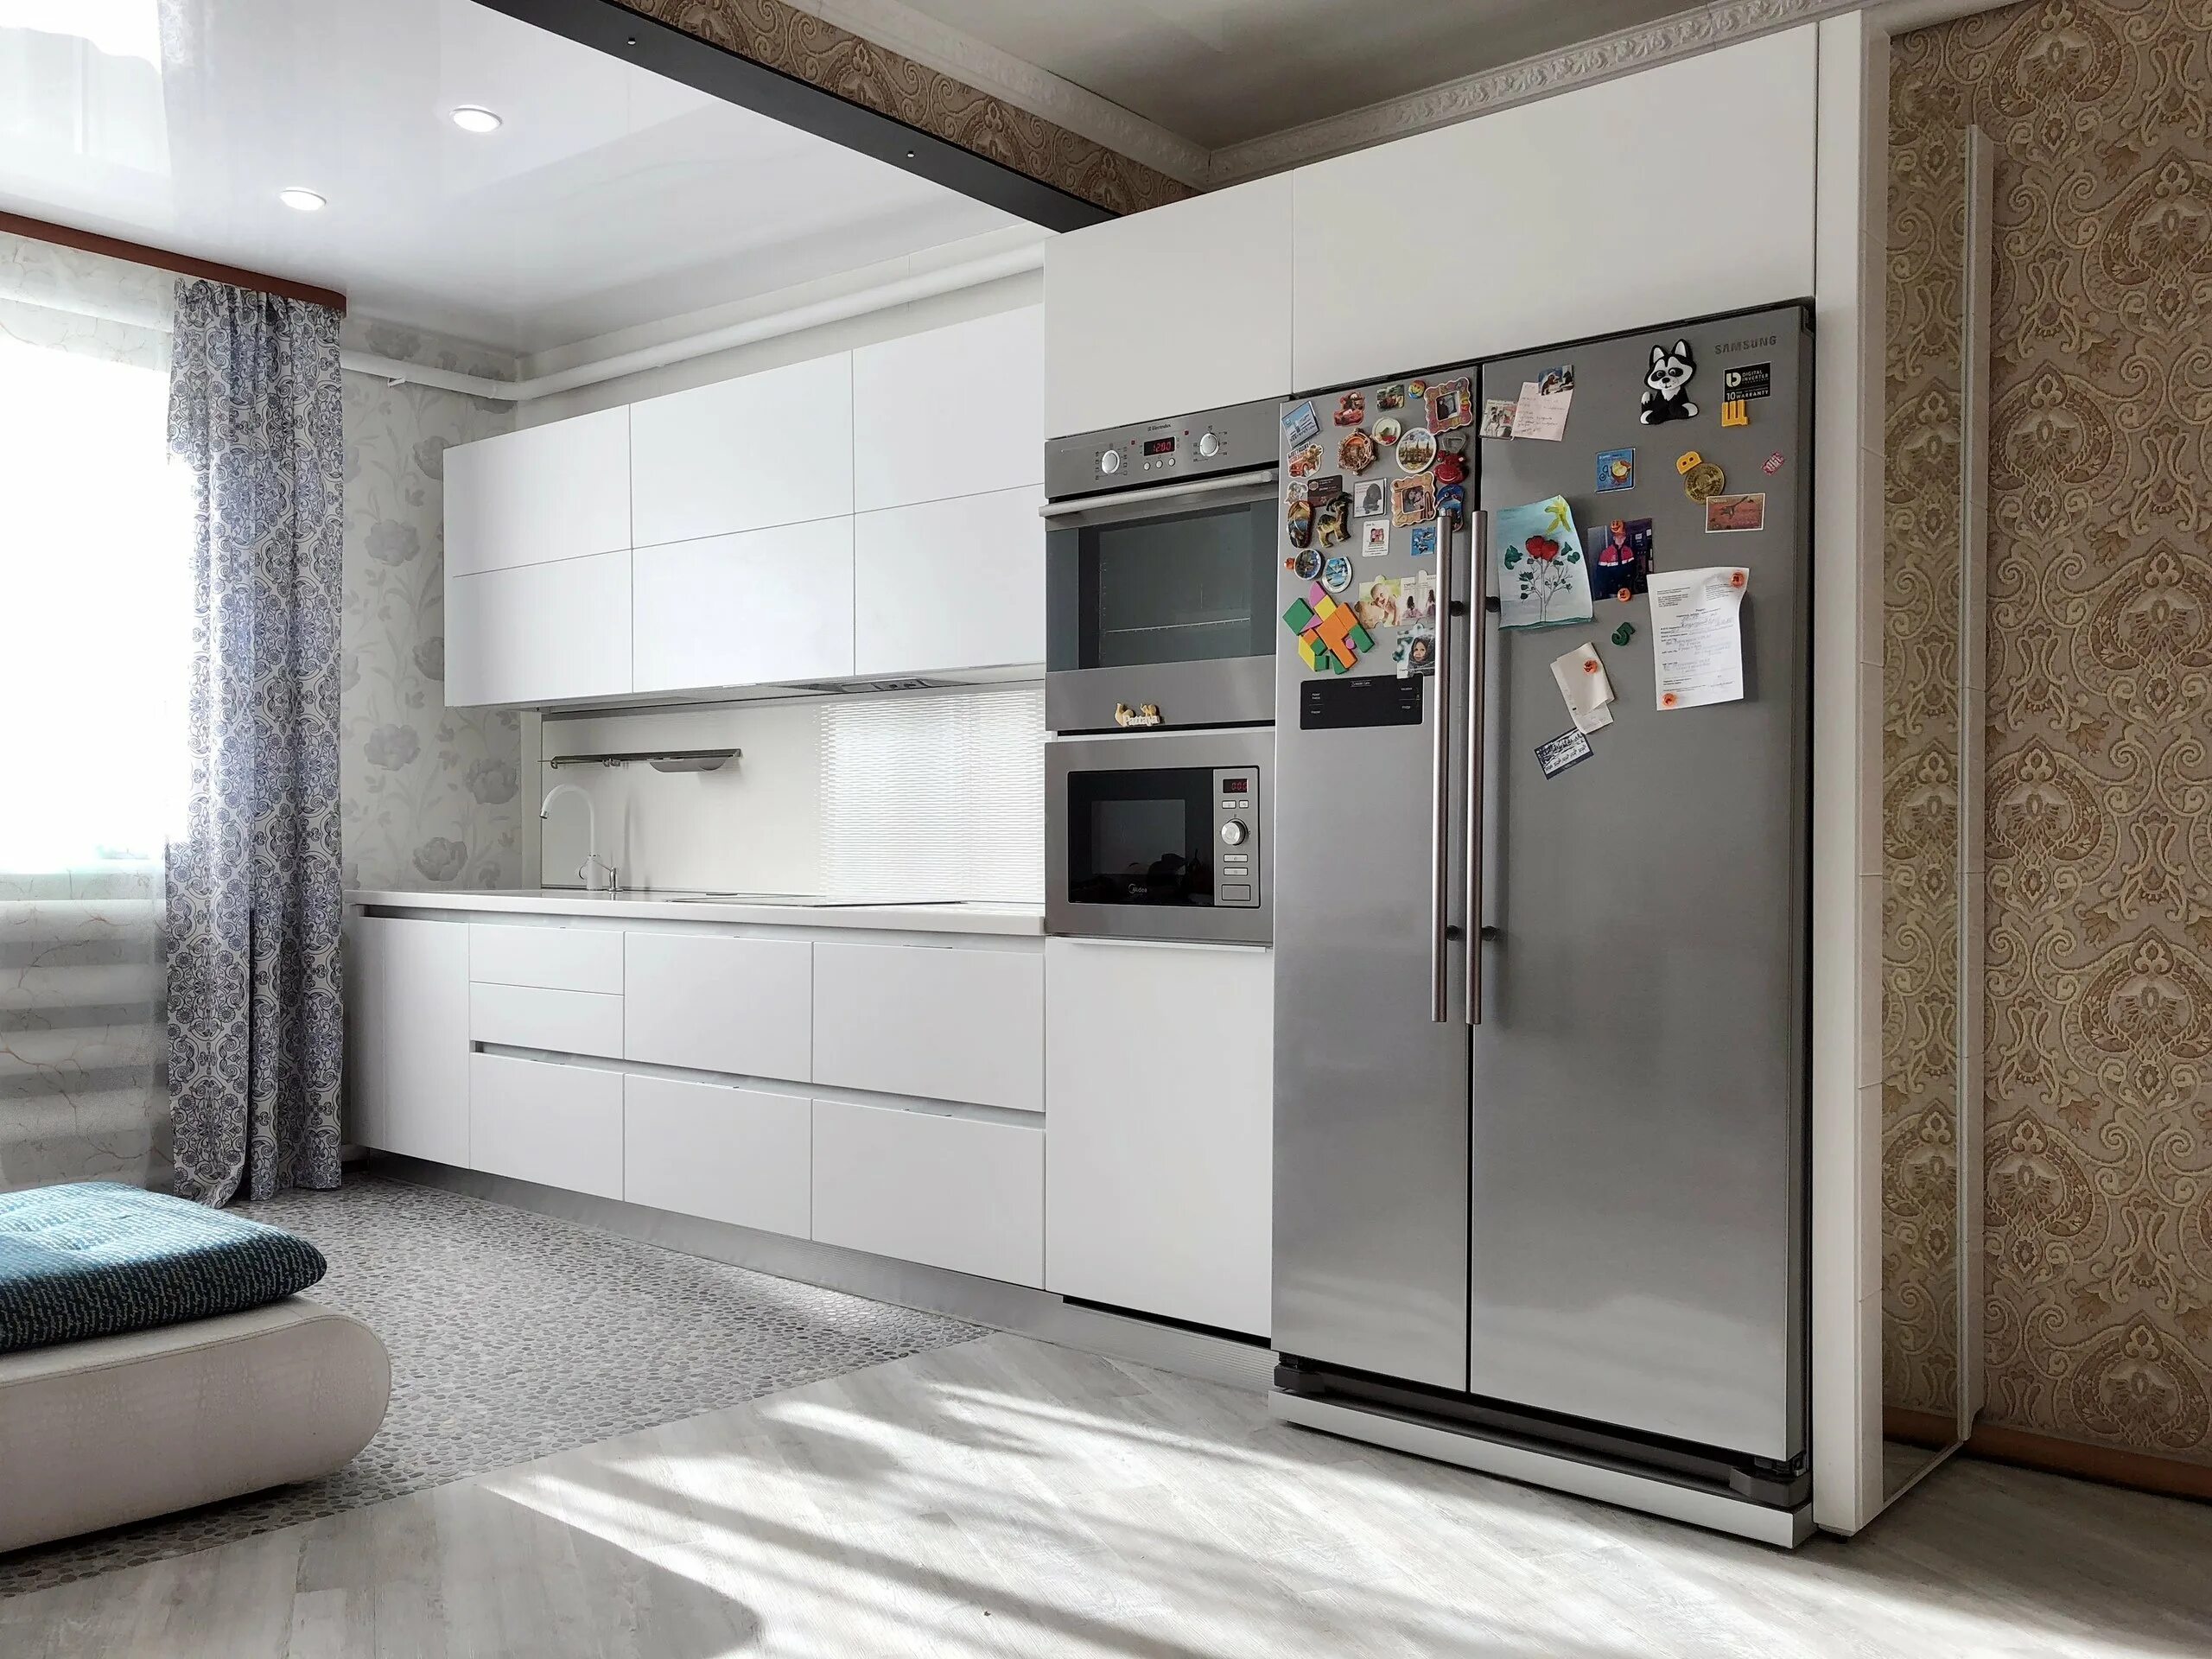 Холодильник в интерьере кухни. Холодильник в современном интерьере. Двухдверный холодильник в интерьере кухни.